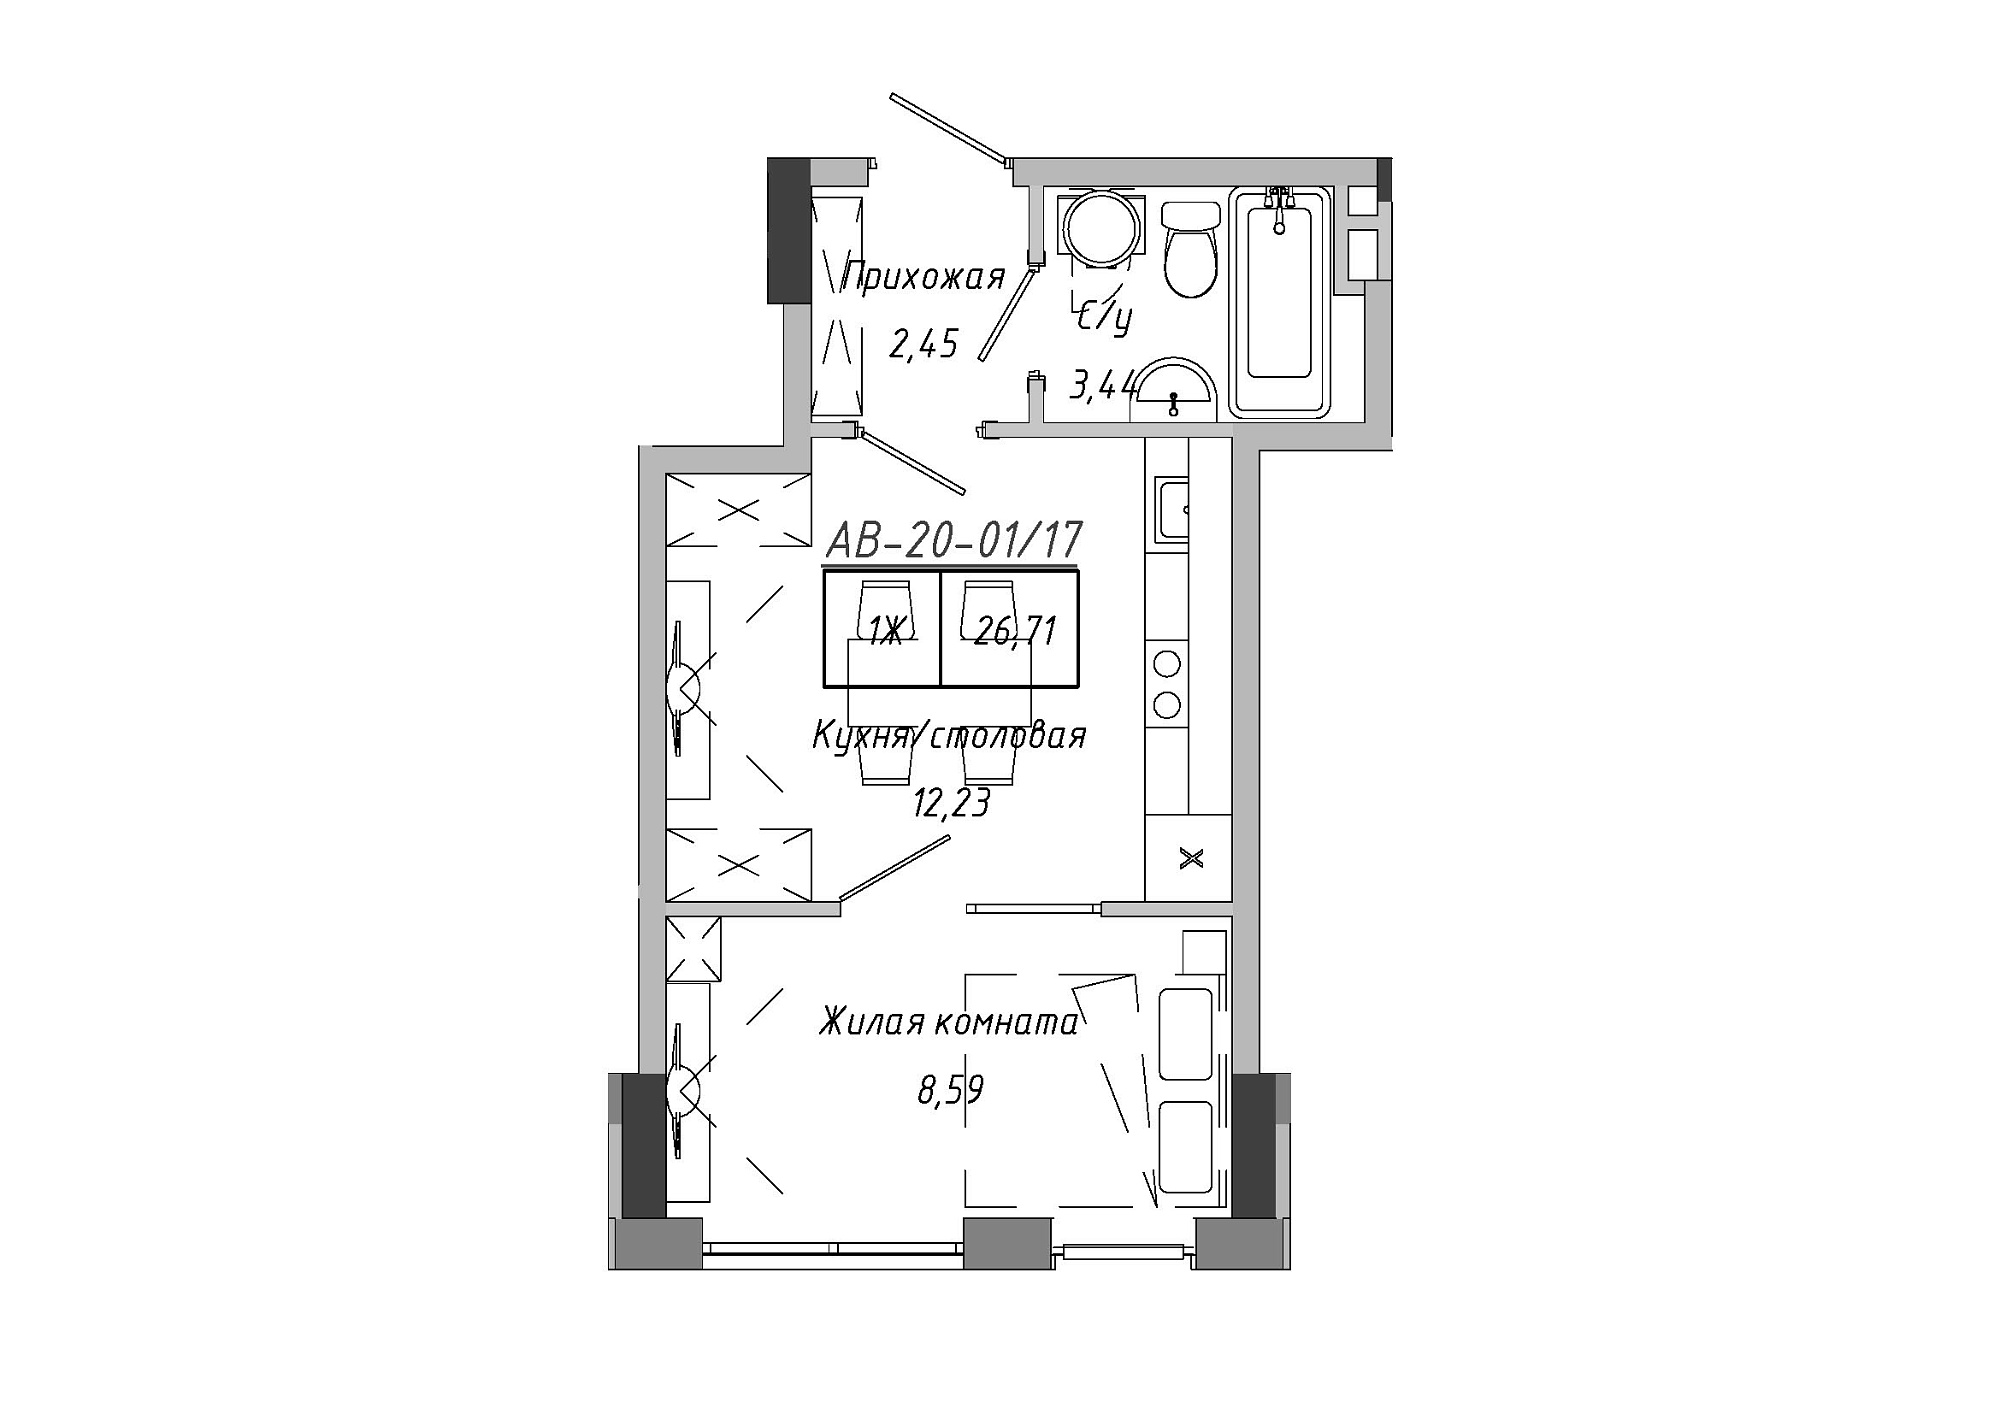 Планування 1-к квартира площею 26.71м2, AB-20-01/00017.